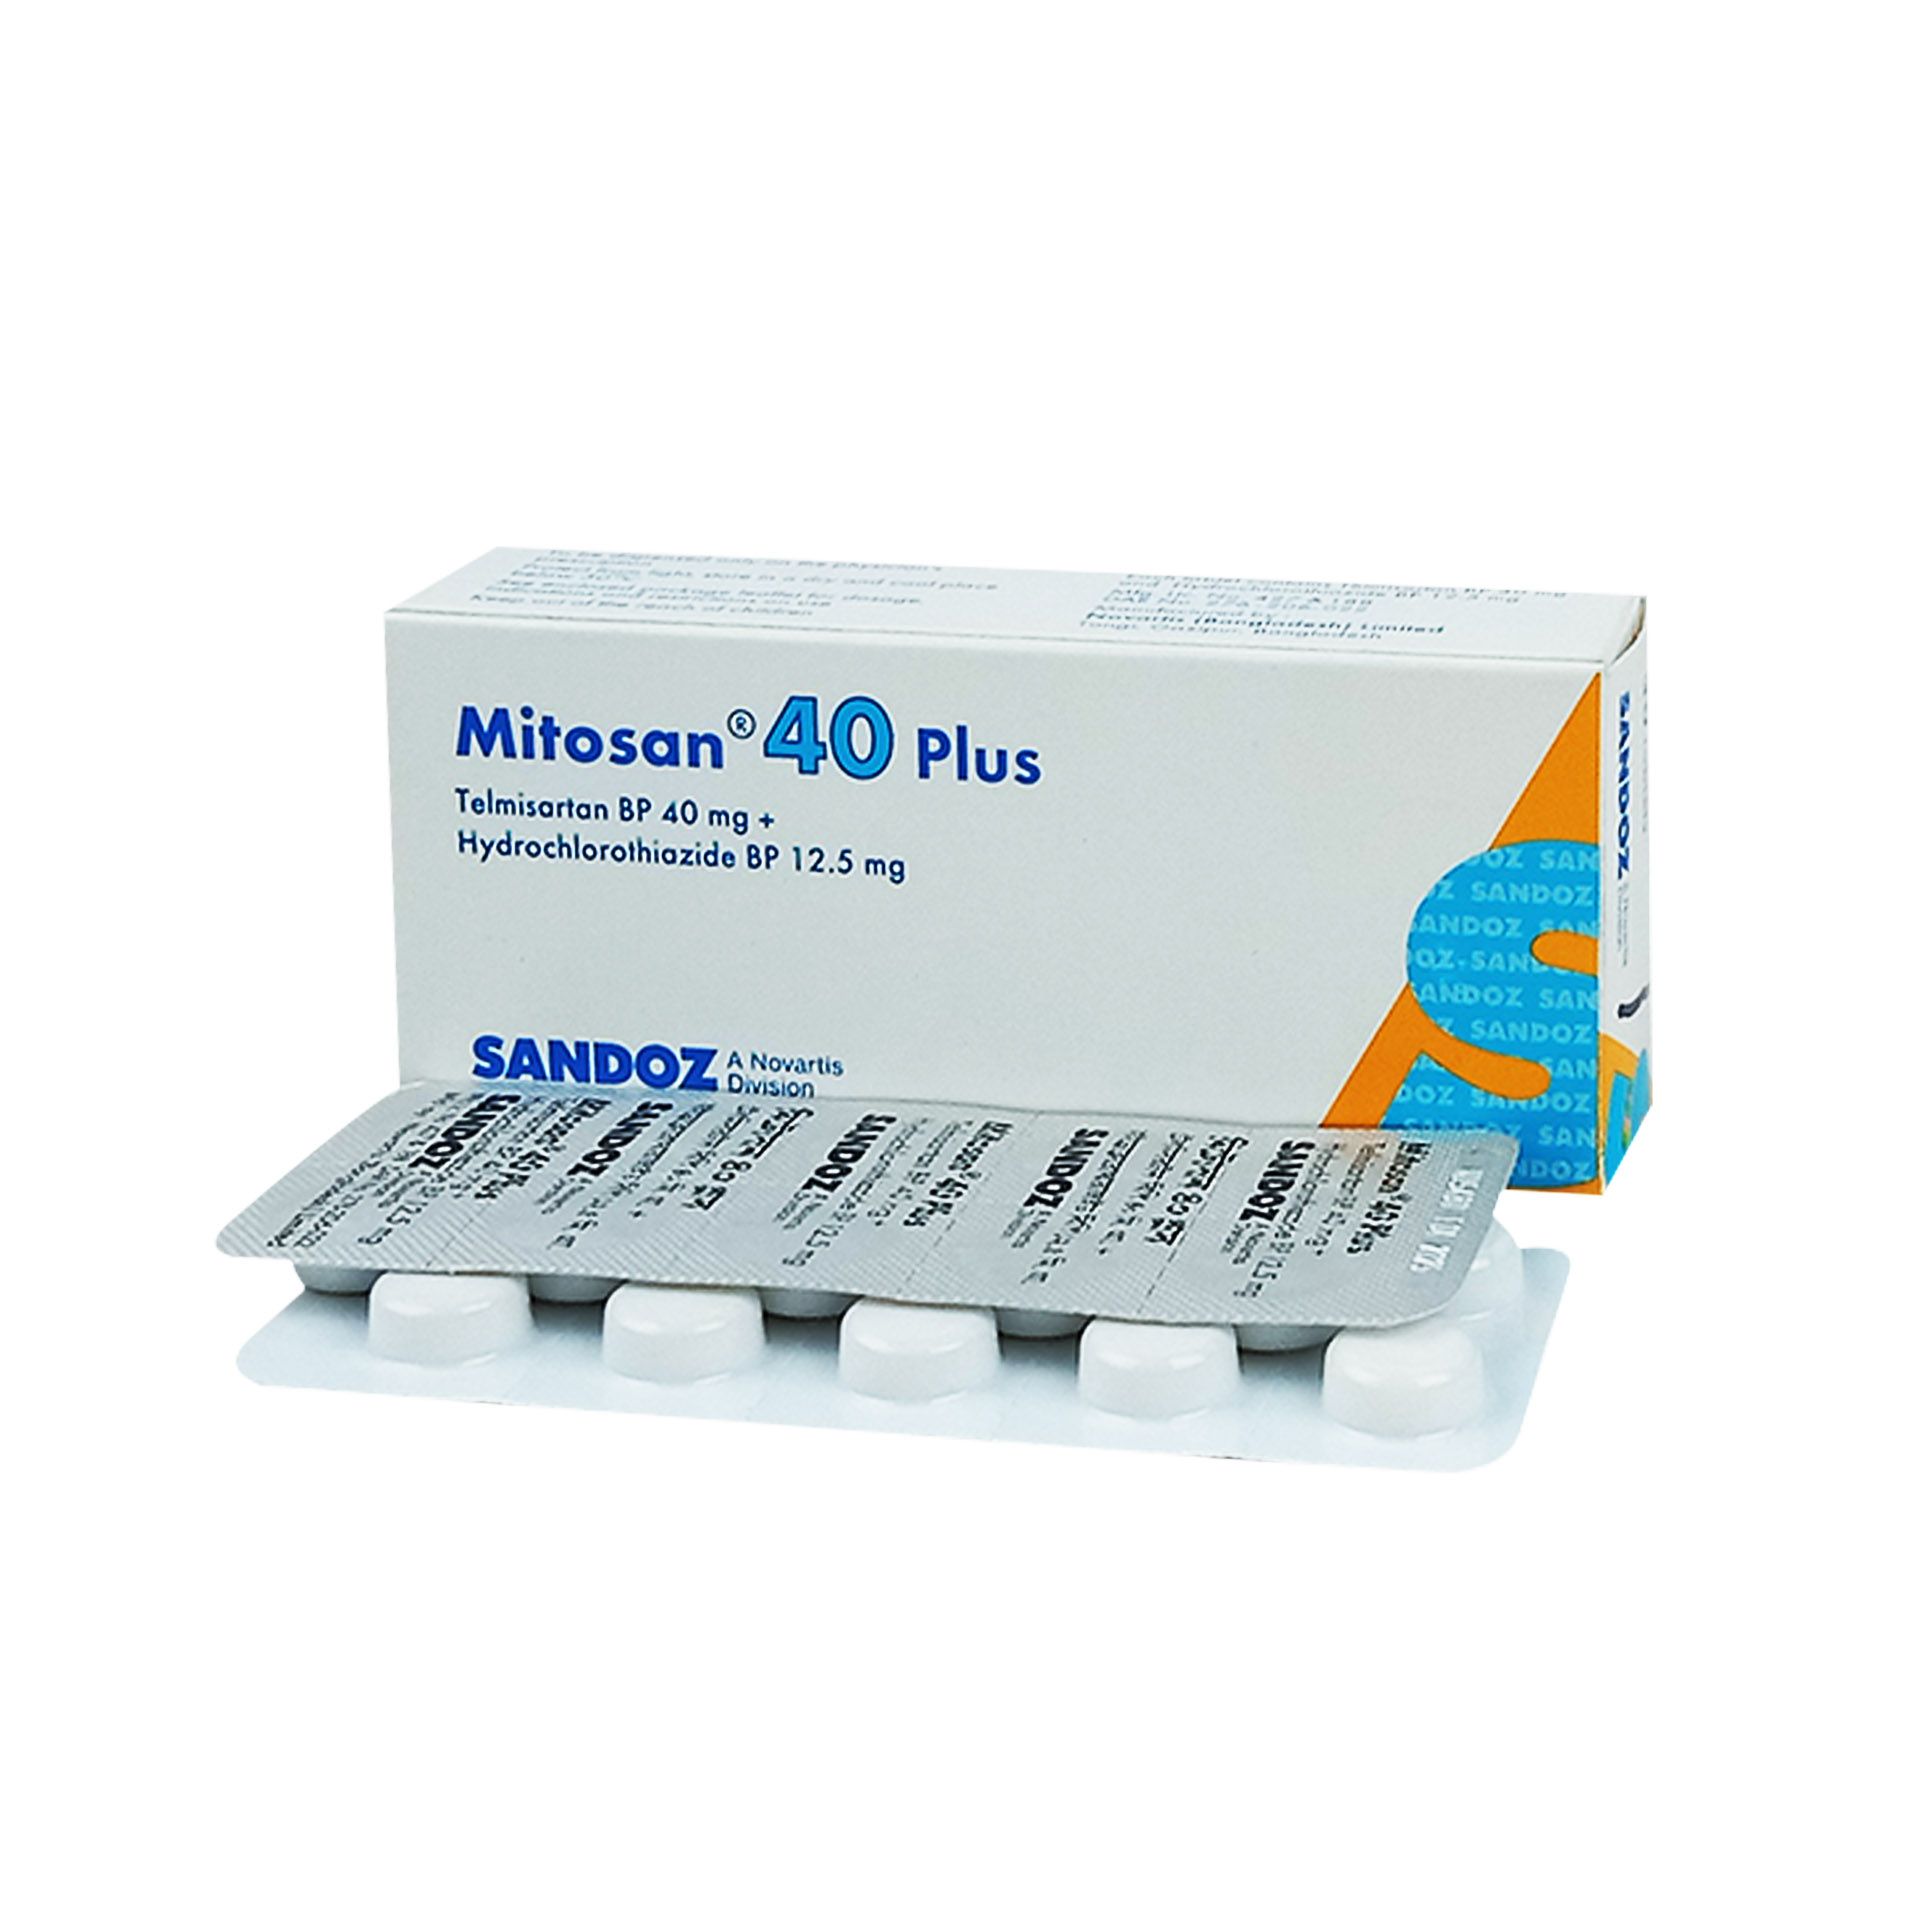 Mitosan Plus 40 12.5mg+40mg Tablet